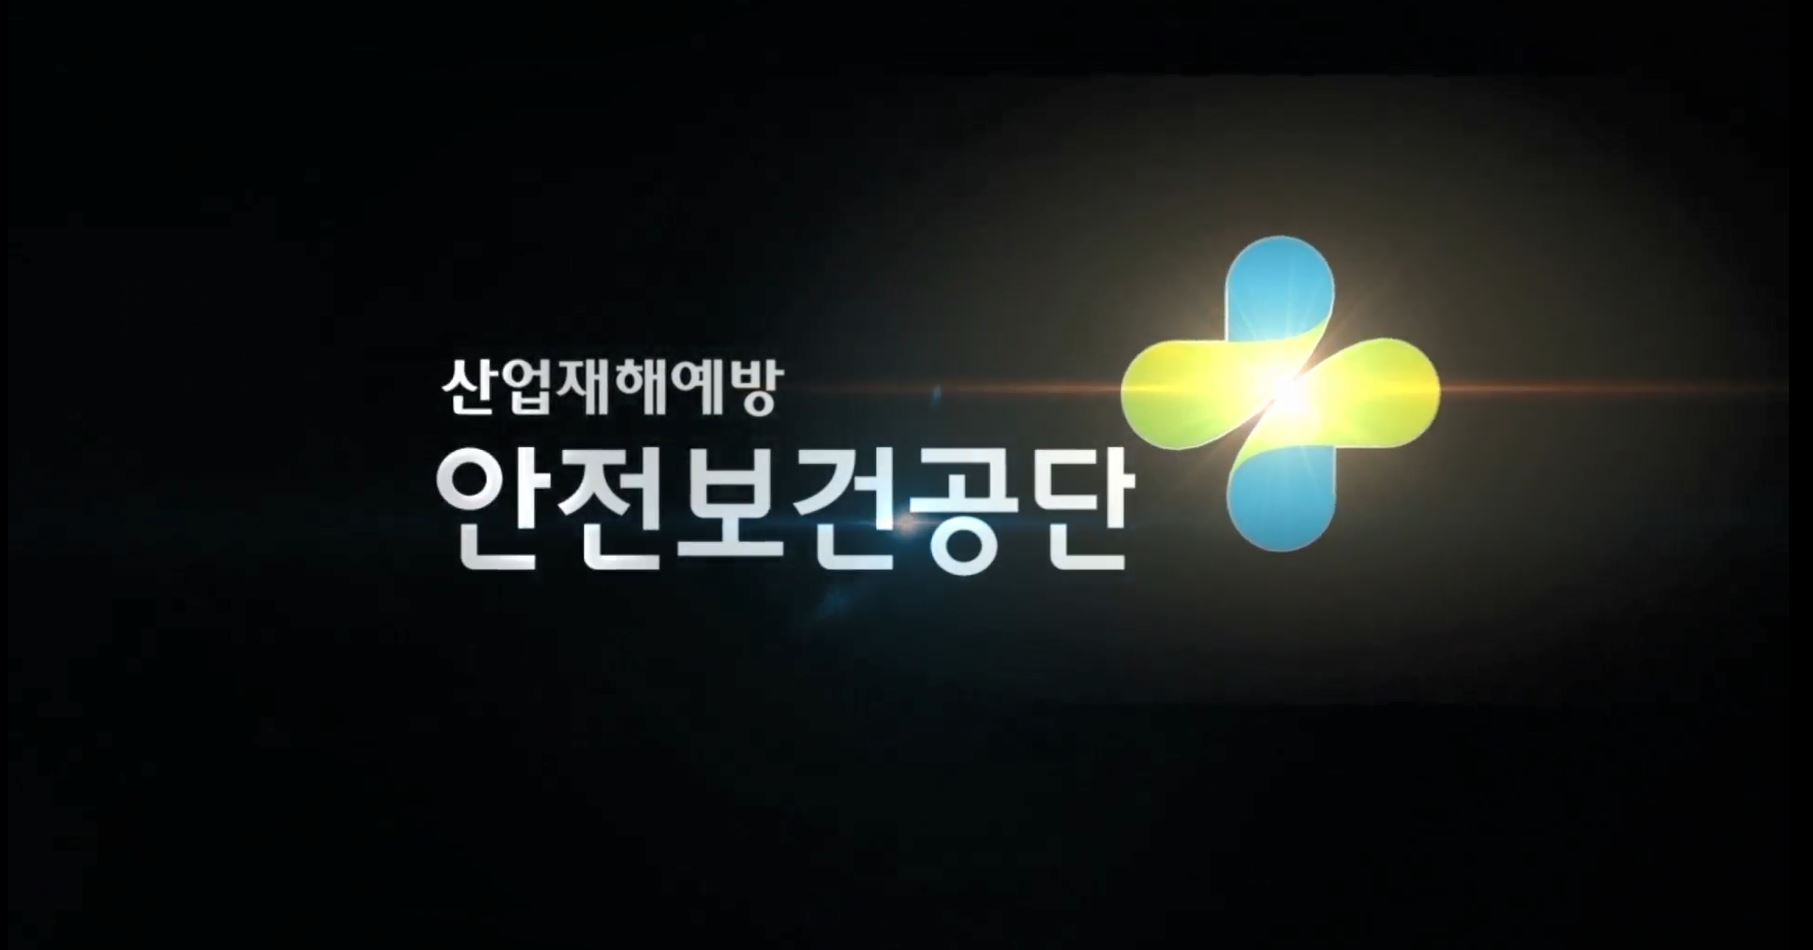 안전보건공단 홍보영상(2019)_국문